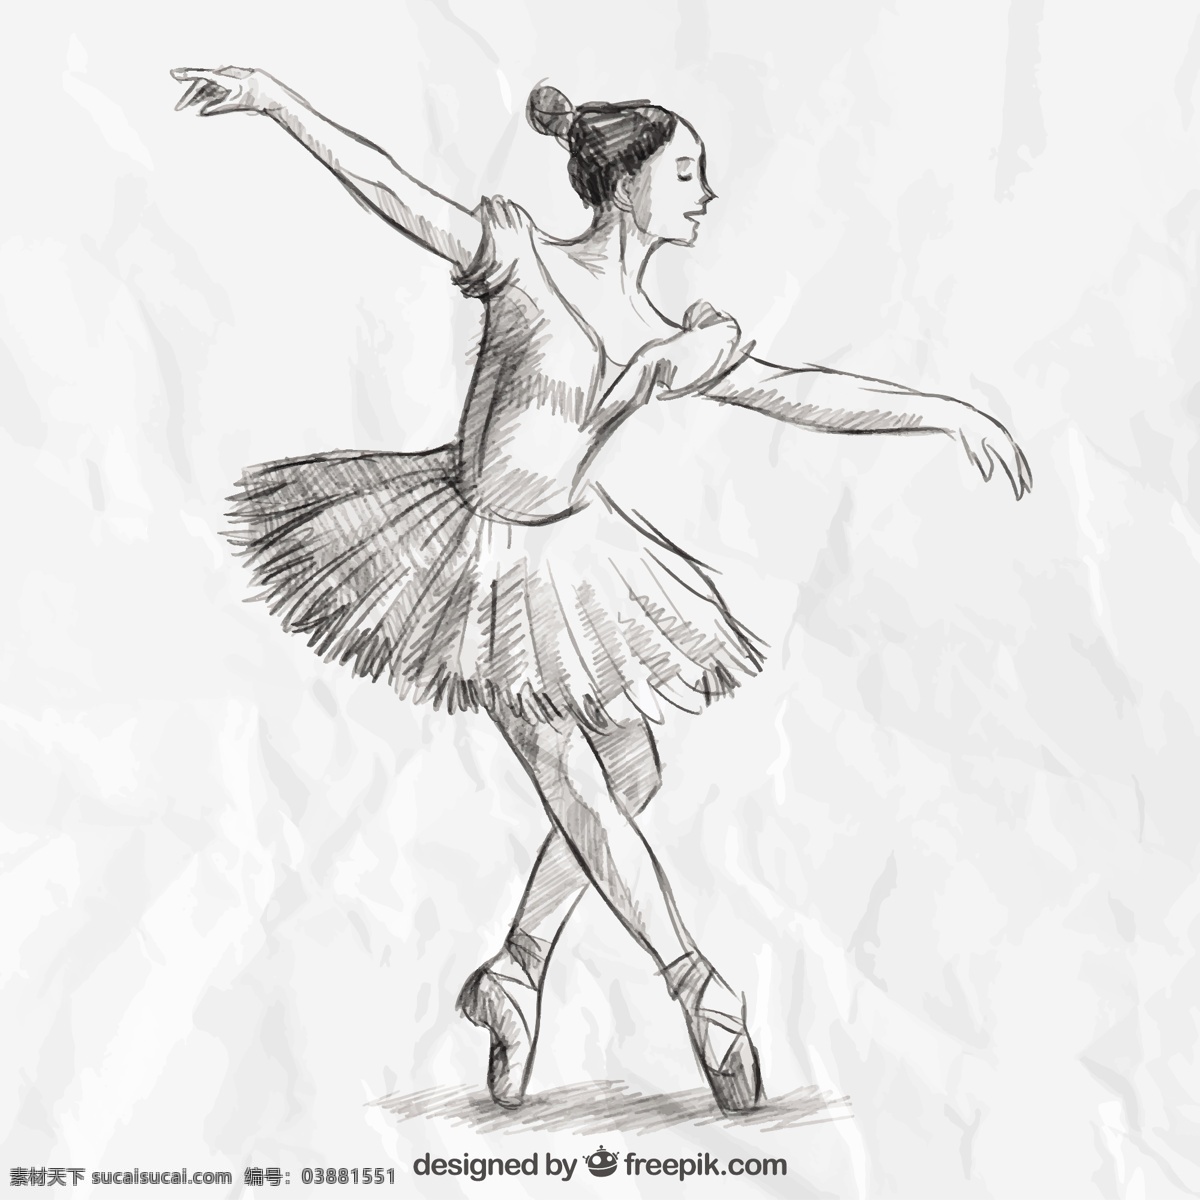 手绘 芭蕾舞 演员 手工 舞蹈 手 画 类型 优雅 绘画 芭蕾 舞蹈家 艺术家 拉 移动 运动 艺术 素描 跳舞 女孩 舞蹈演员 短裙 白色